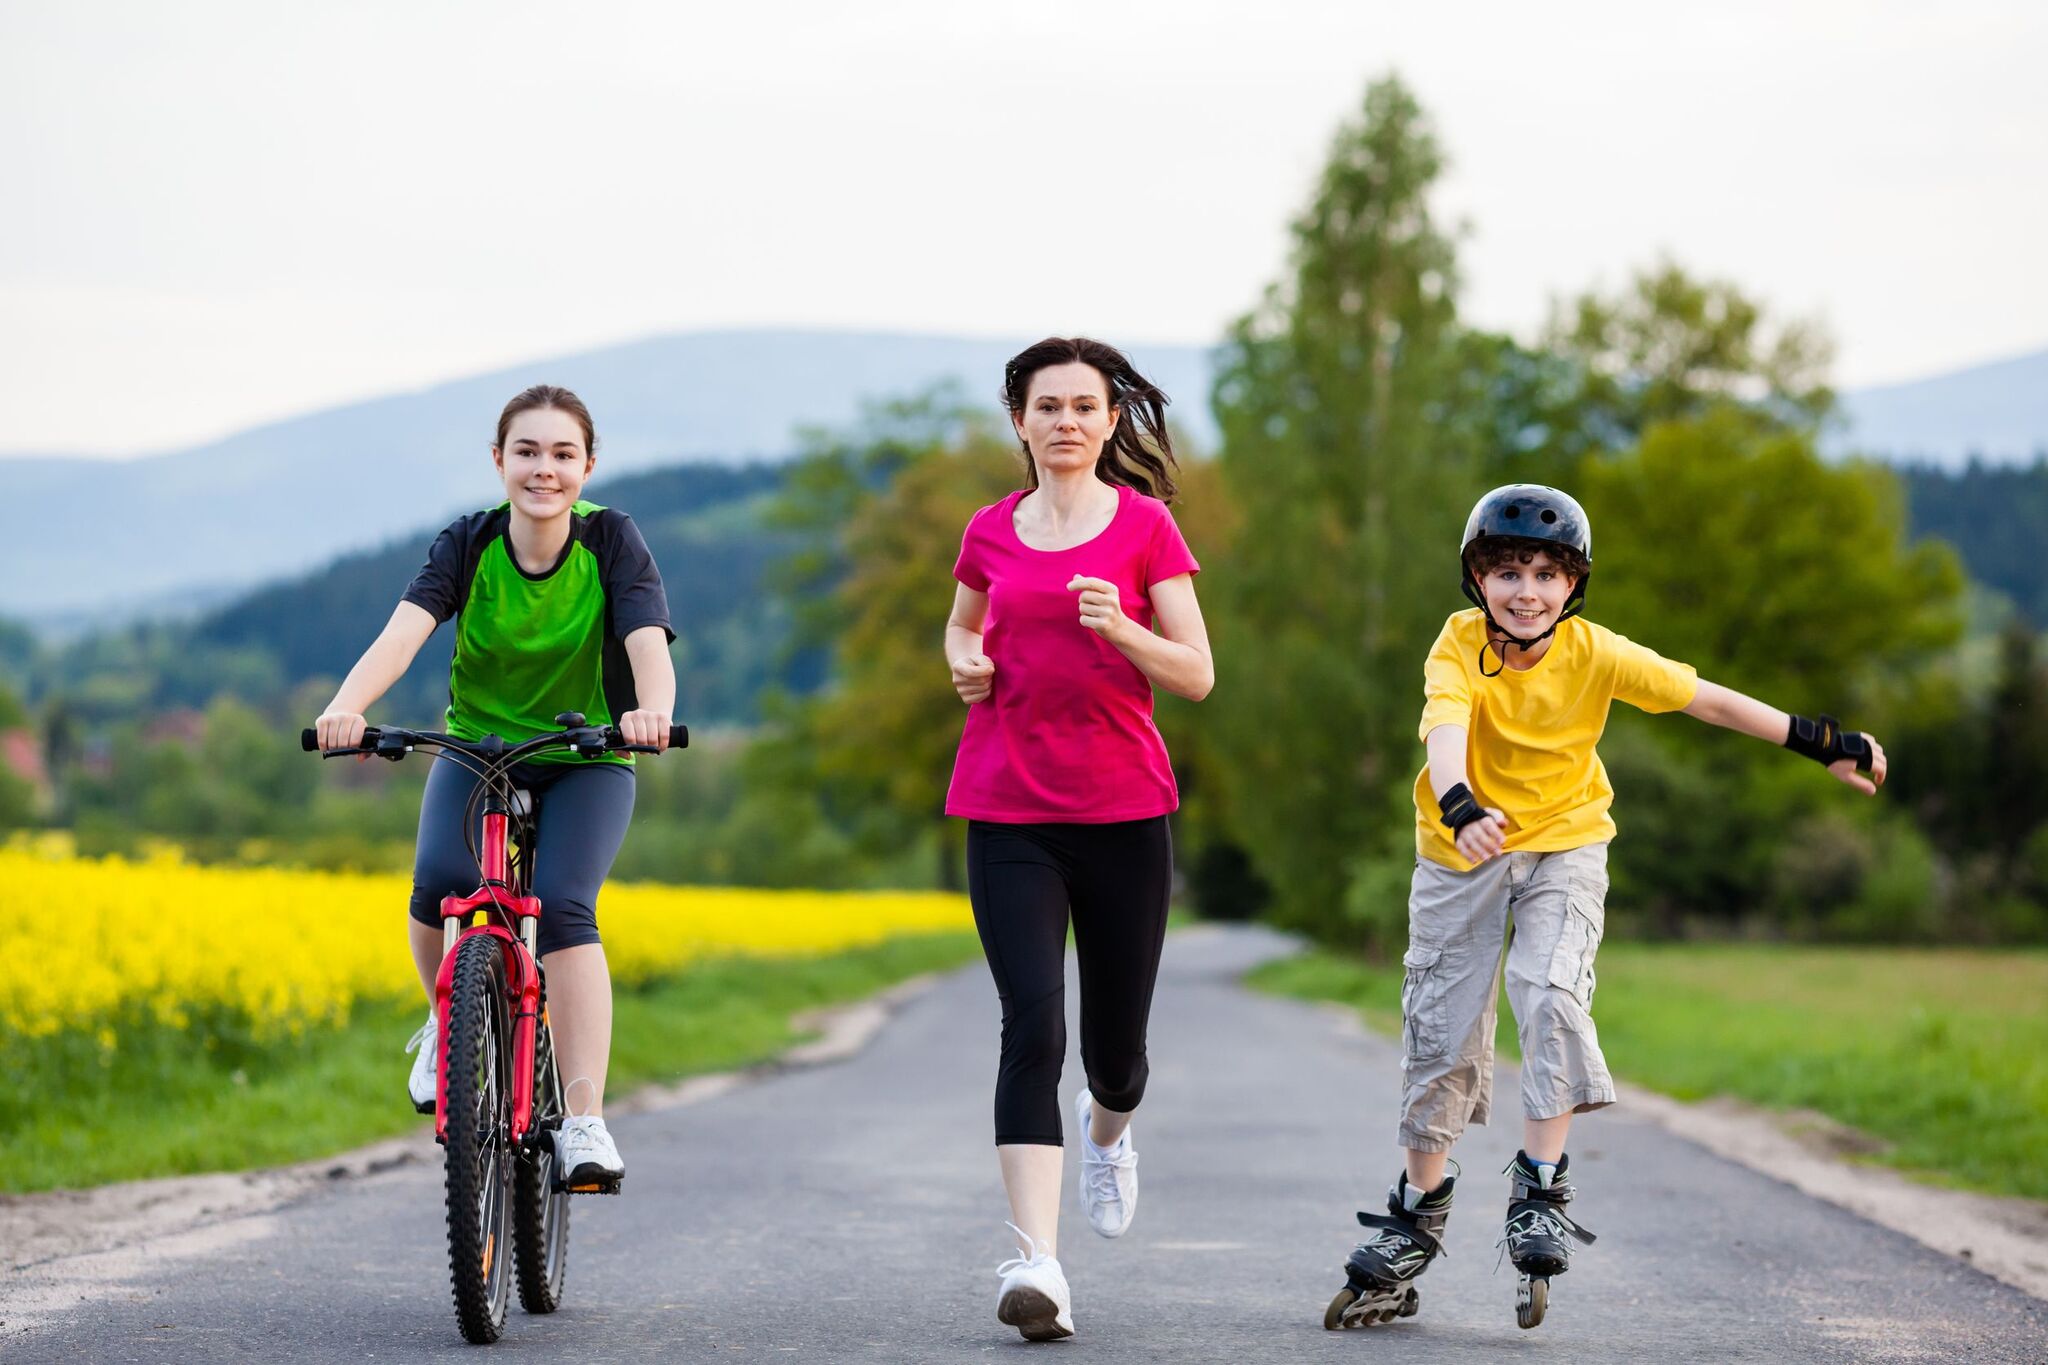 Активный подросток. Активный образ жизни. Кататься на велосипеде. Сеьм язанмиается спортом. Активный и здоровый образ жизни.